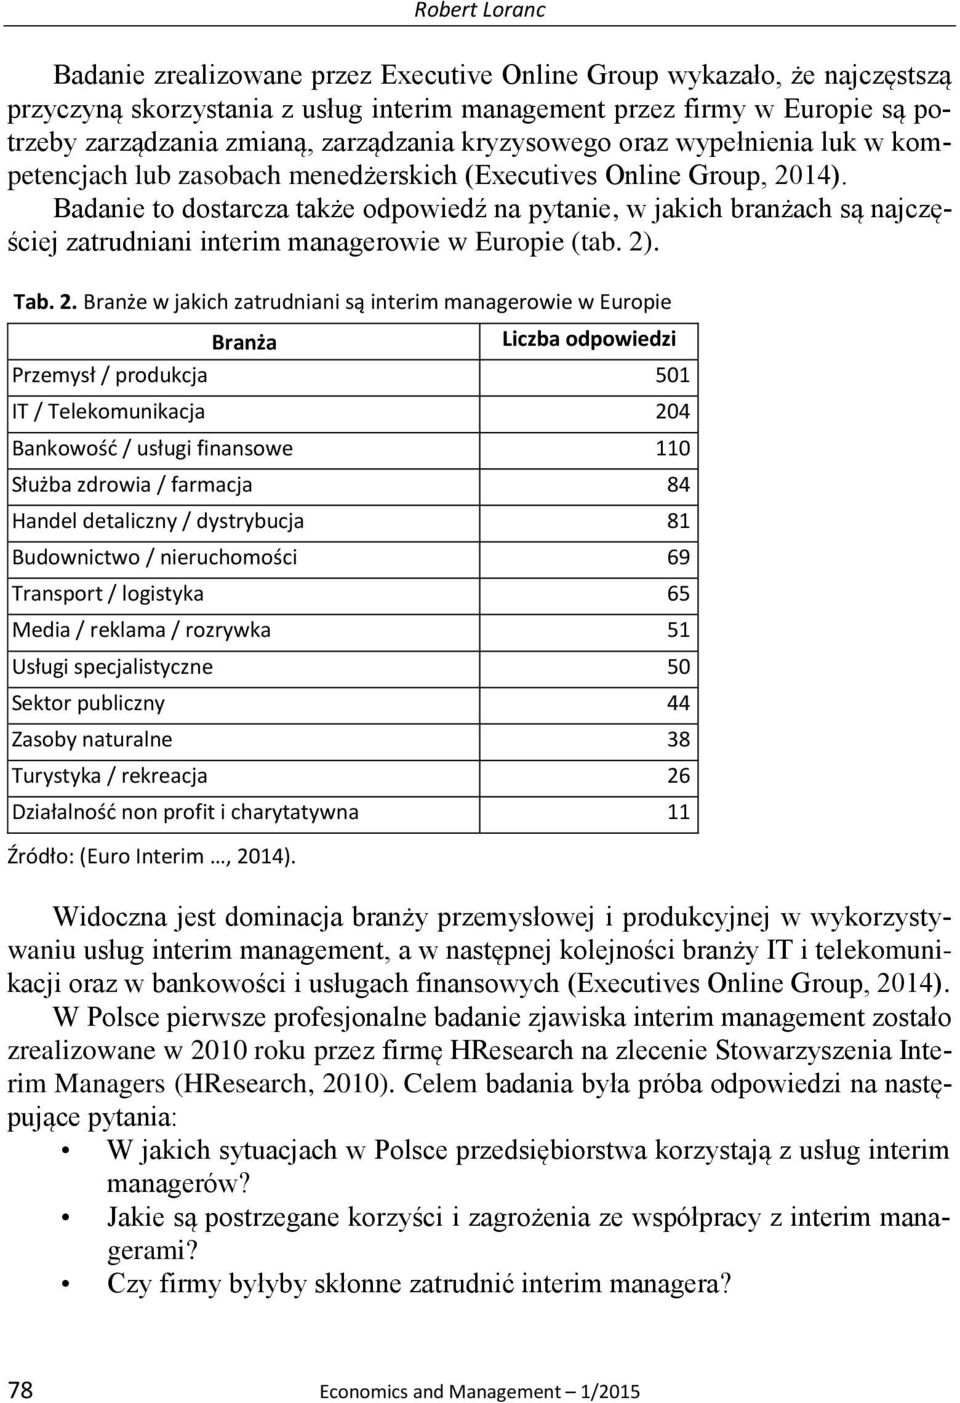 Badanie to dostarcza także odpowiedź na pytanie, w jakich branżach są najczęściej zatrudniani interim managerowie w Europie (tab. 2)